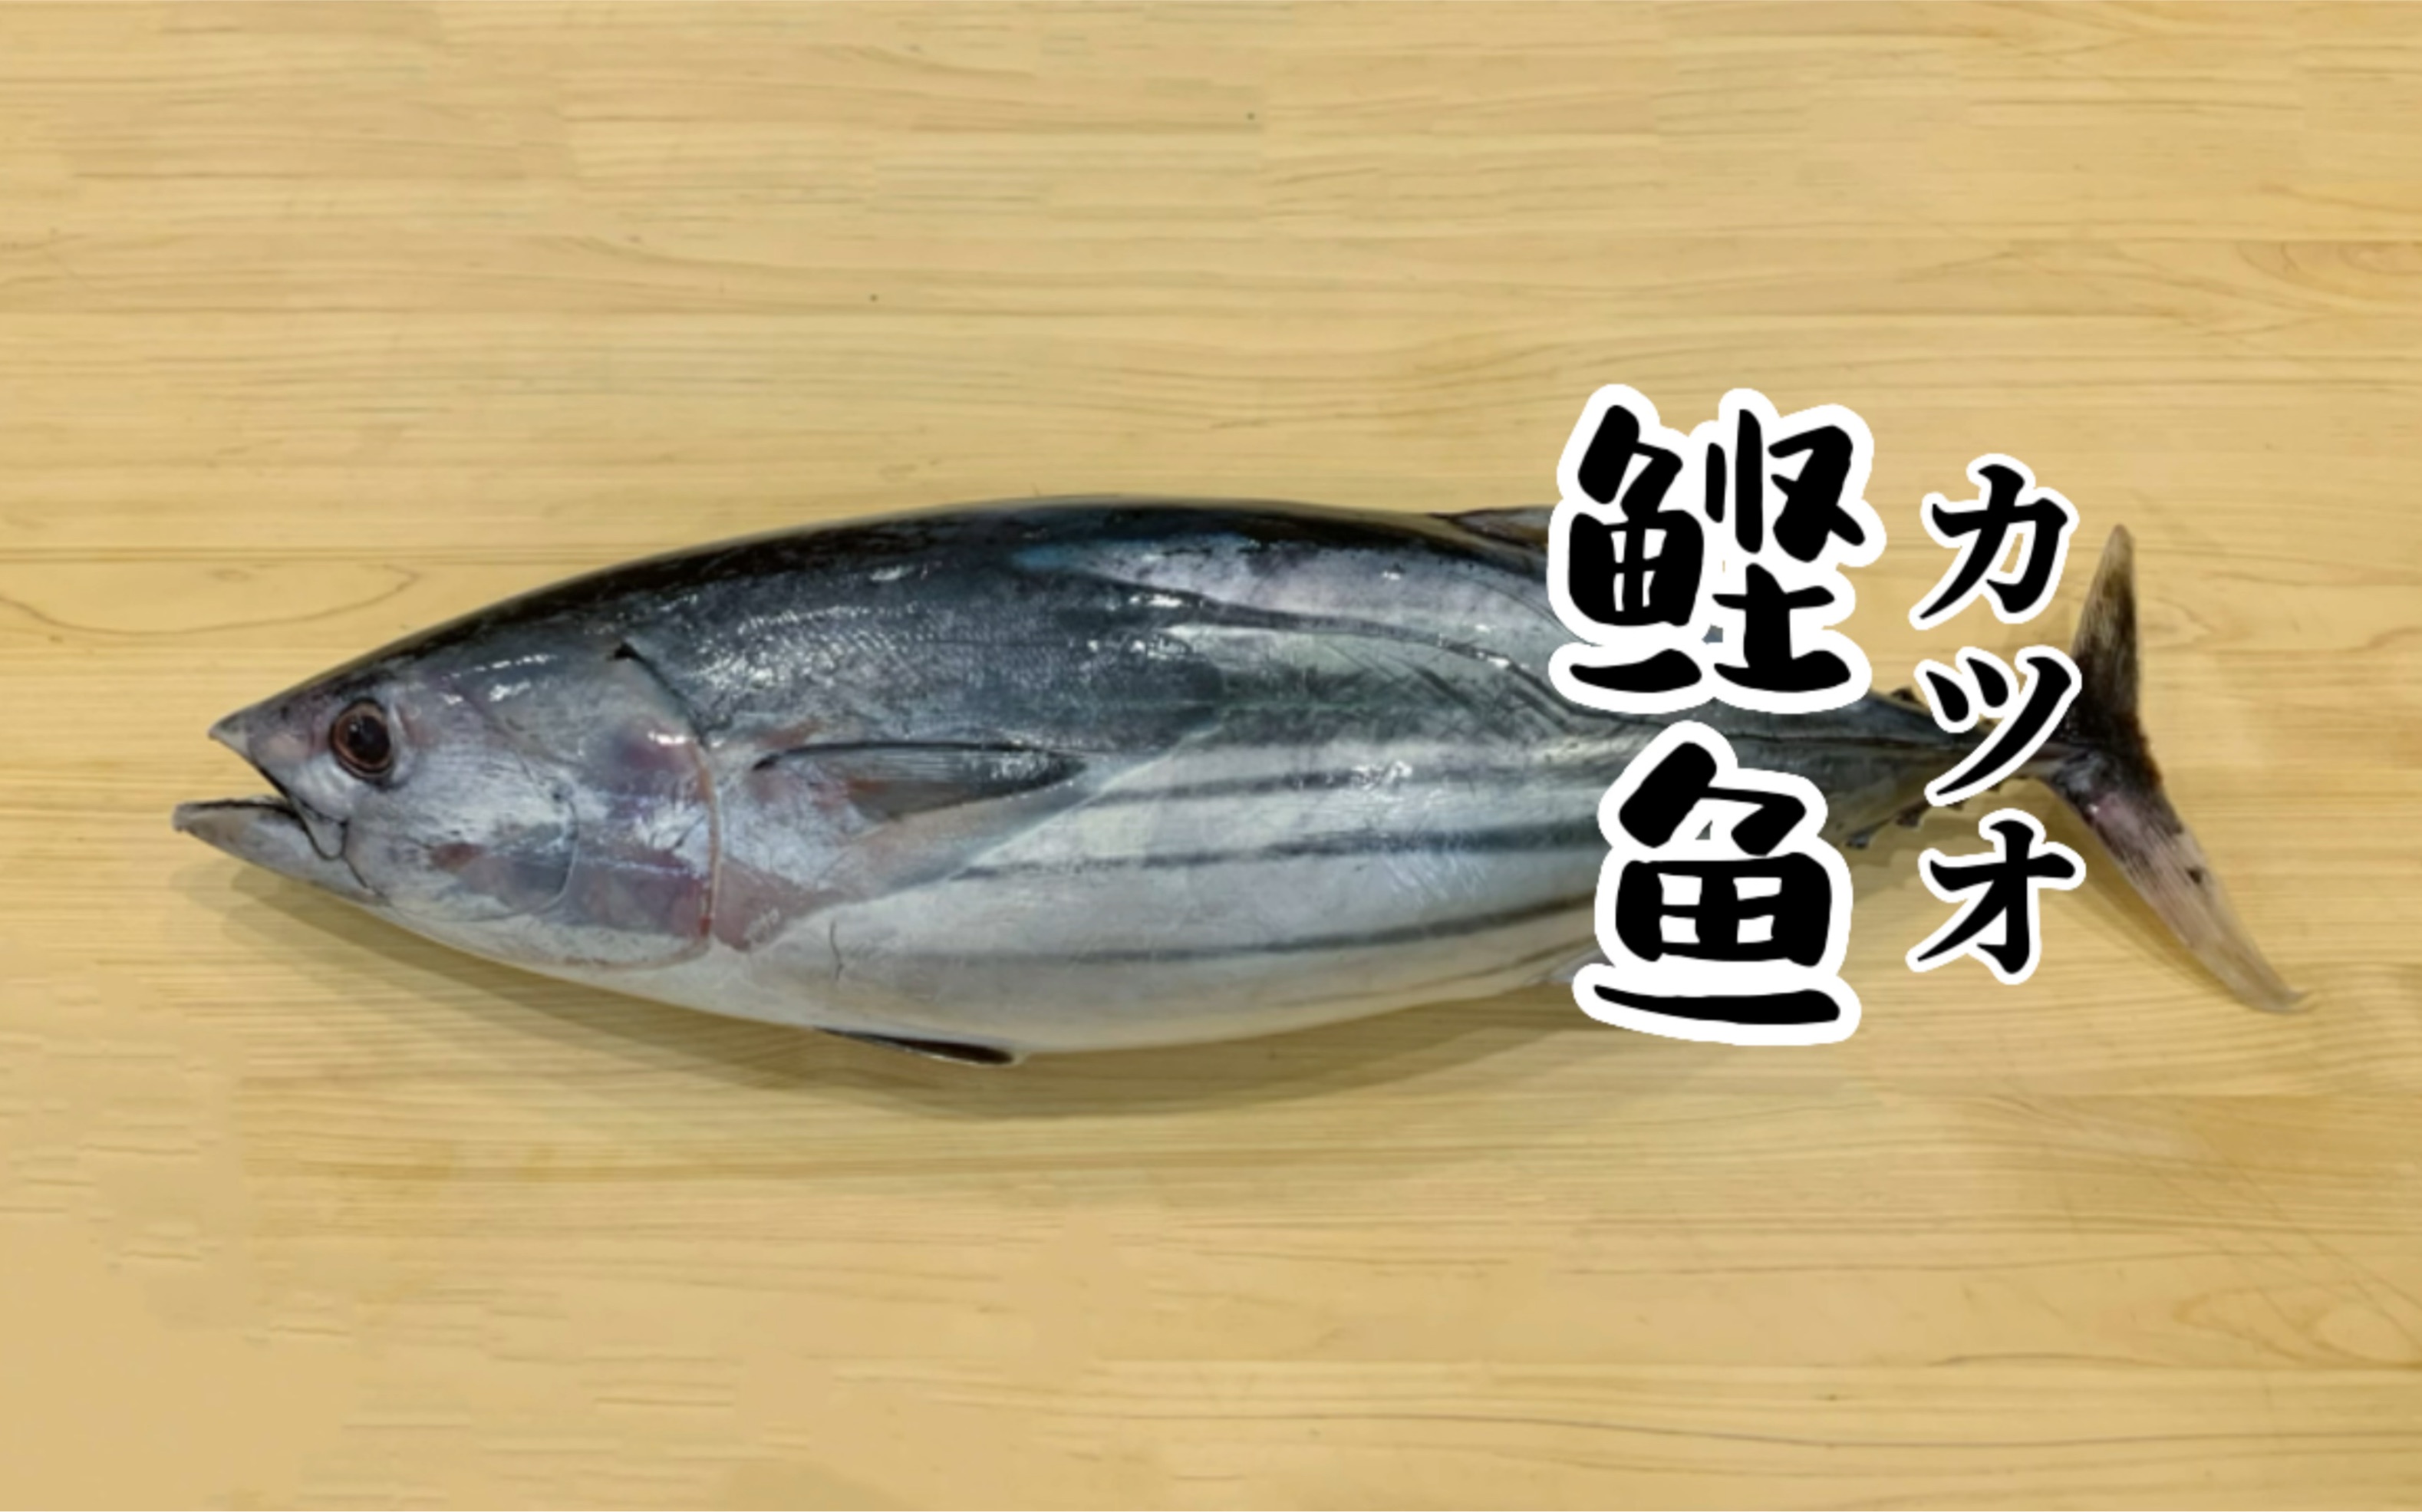 Thunnus tonggol Longtail tuna